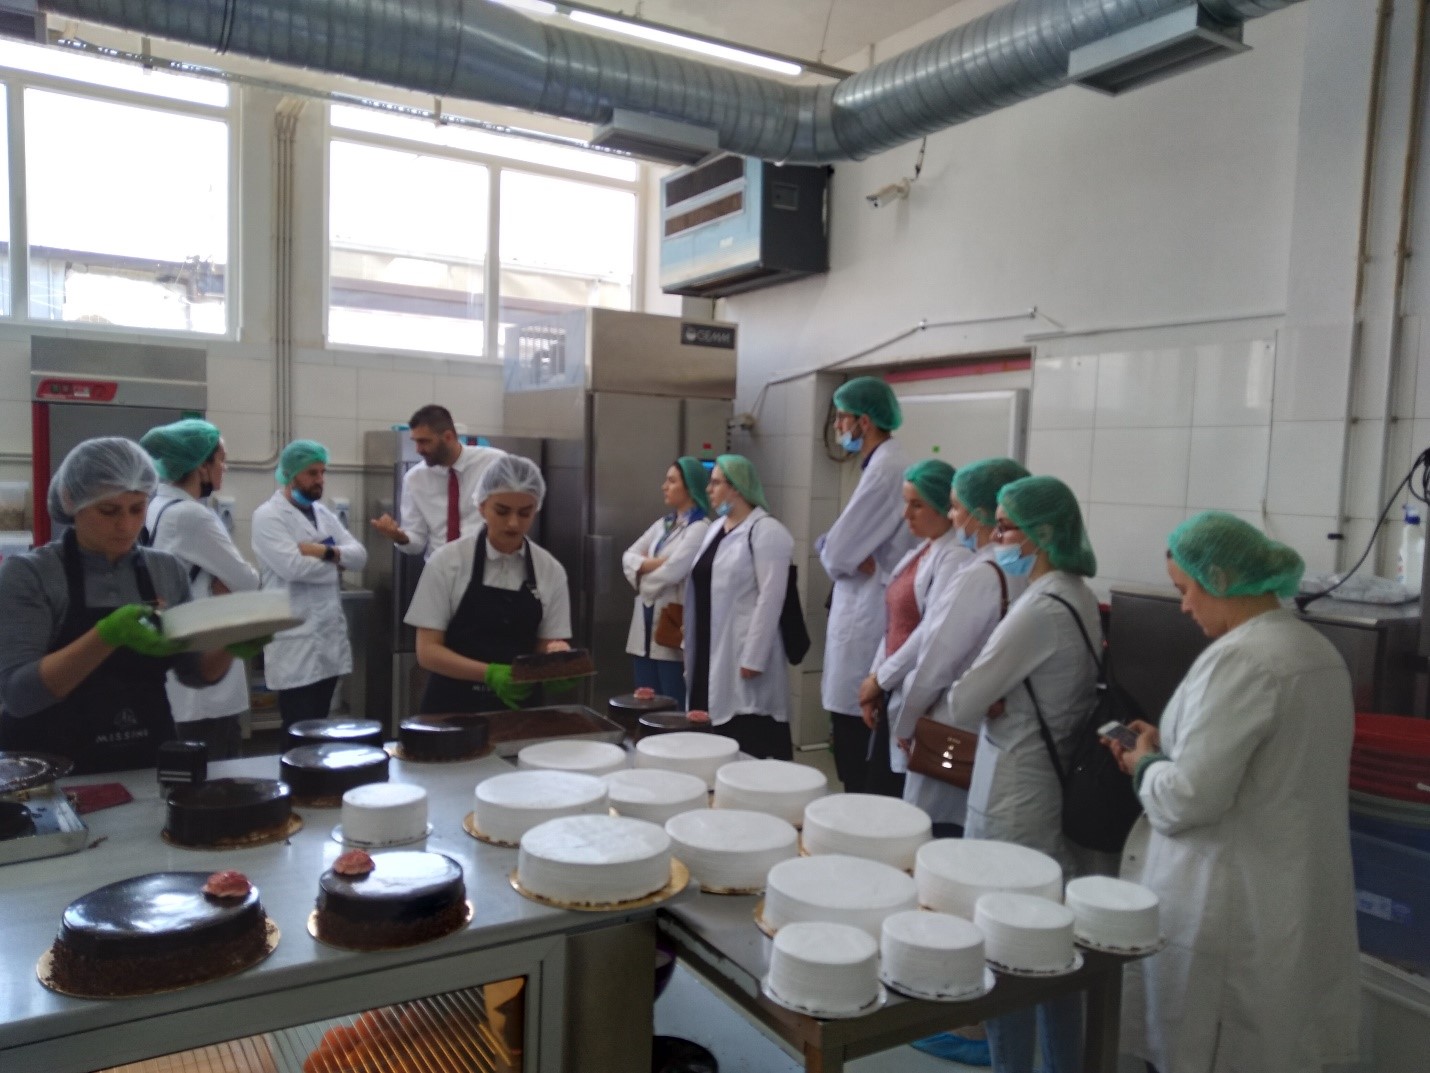 Studentët e FTU-së realizuan vizitën studimore në fabrikën "Missini Sweets" në Mitrovicë